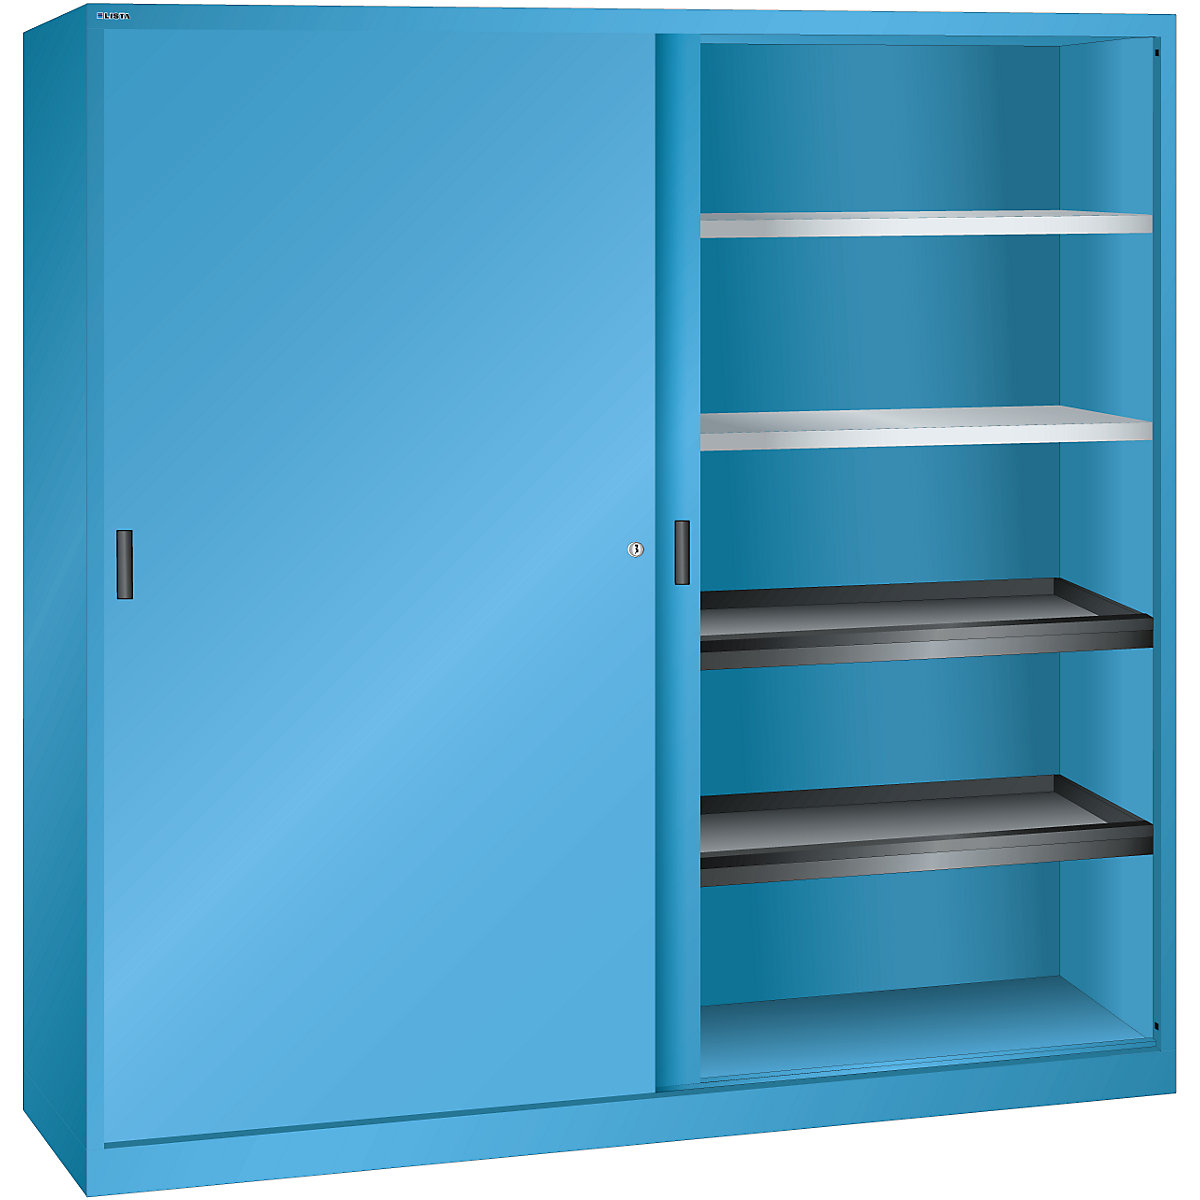 Szafa z drzwiami przesuwnymi z drzwiami w całości z blachy – LISTA, 4 półki, 4 półki wysuwane, jasnoniebieska-8